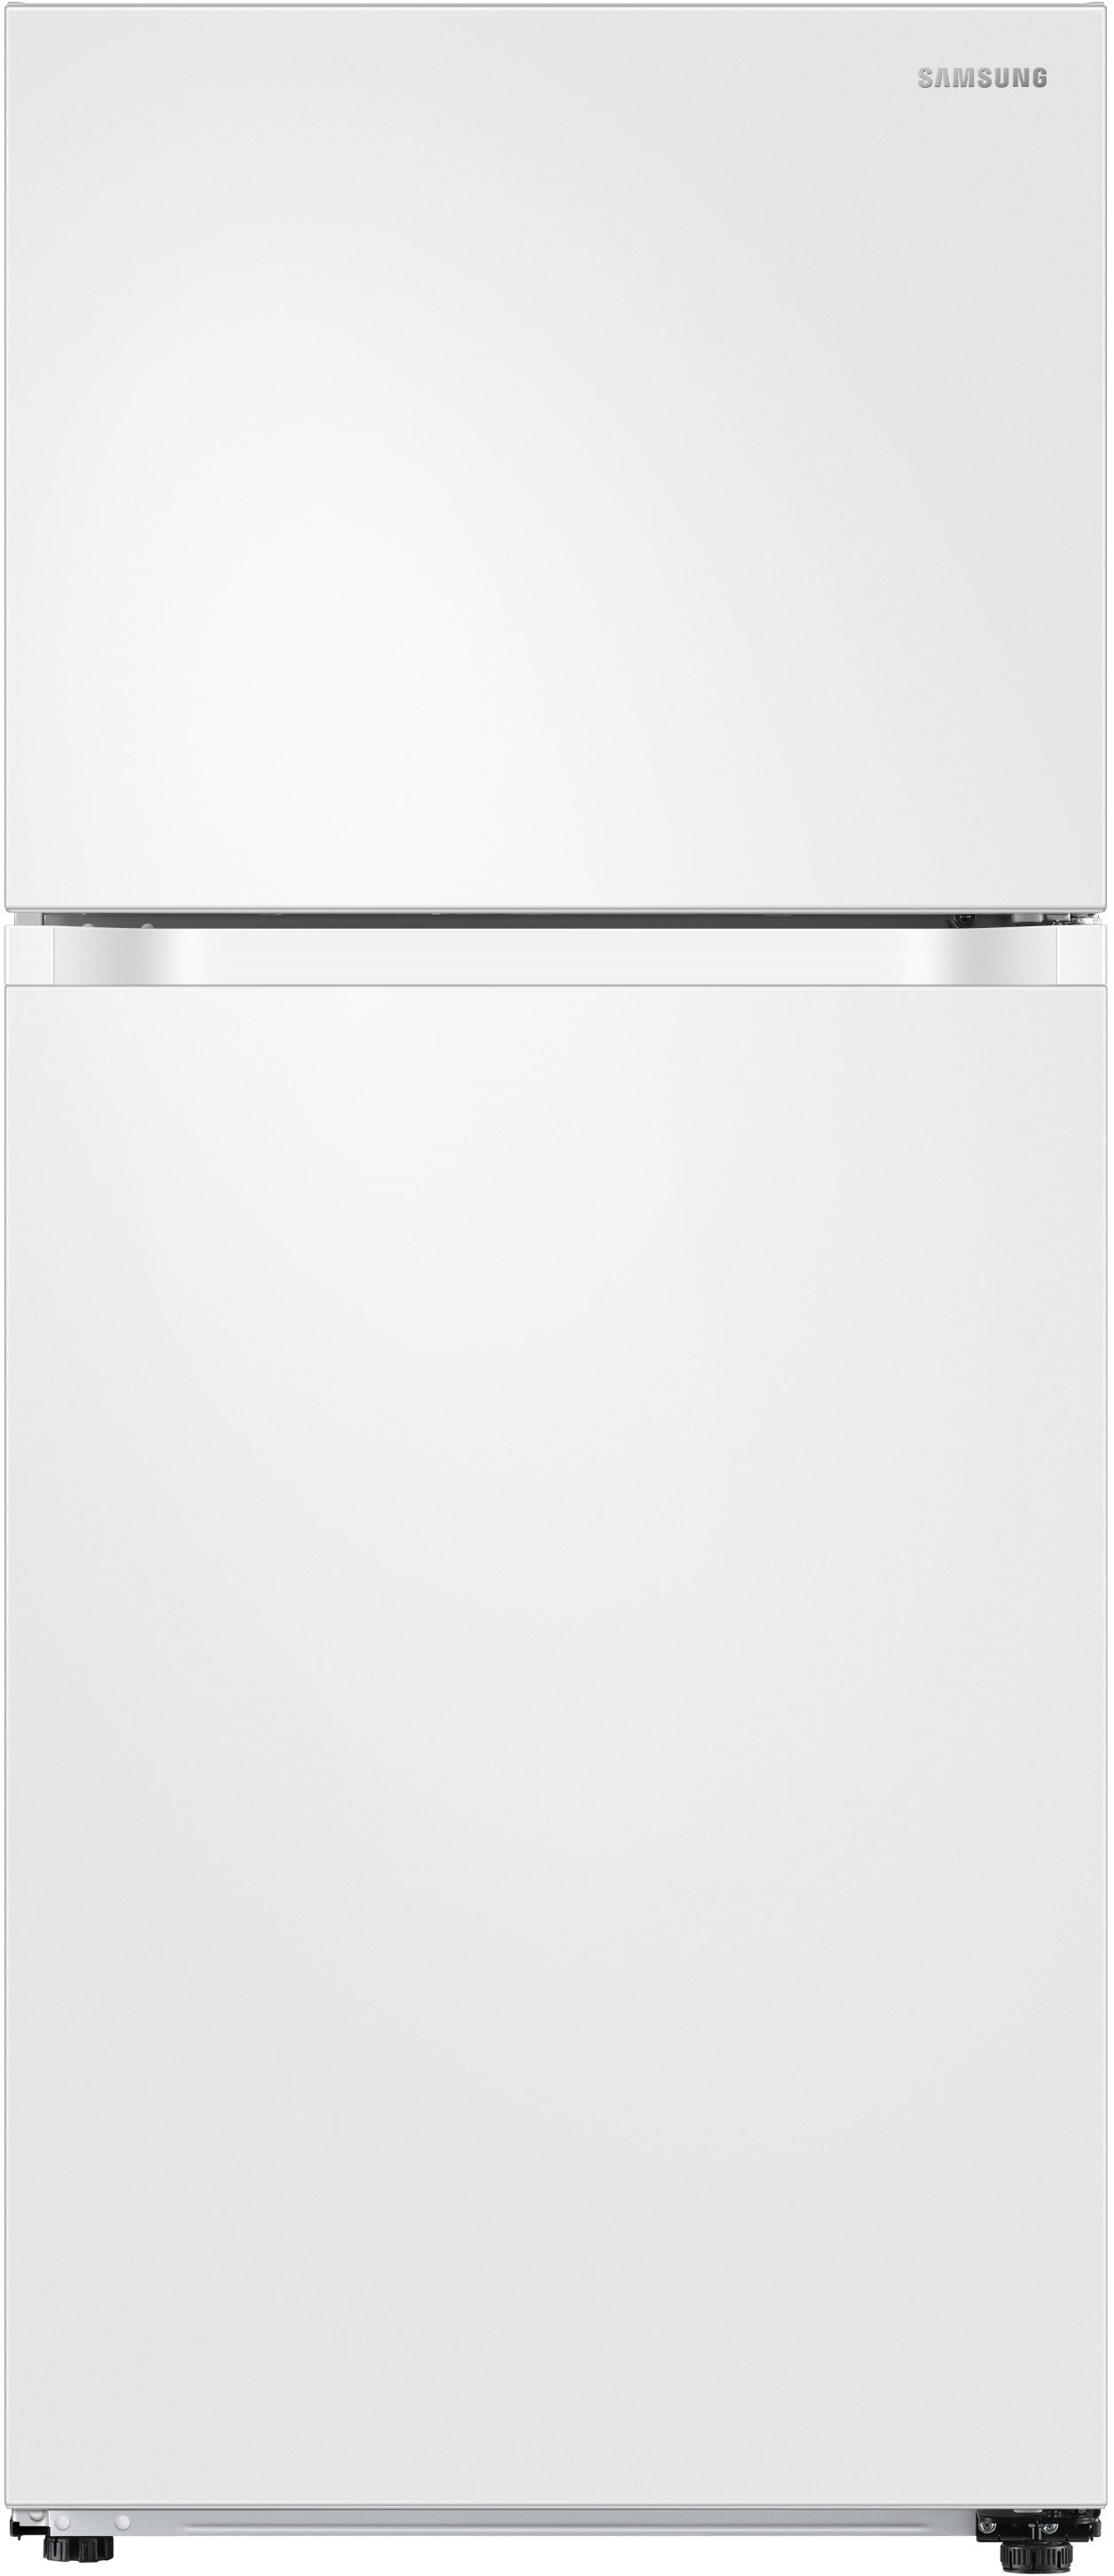 Samsung RT18M6213WW/AA 18 Cu. Ft. Top Freezer Refrigerator With Flex zone